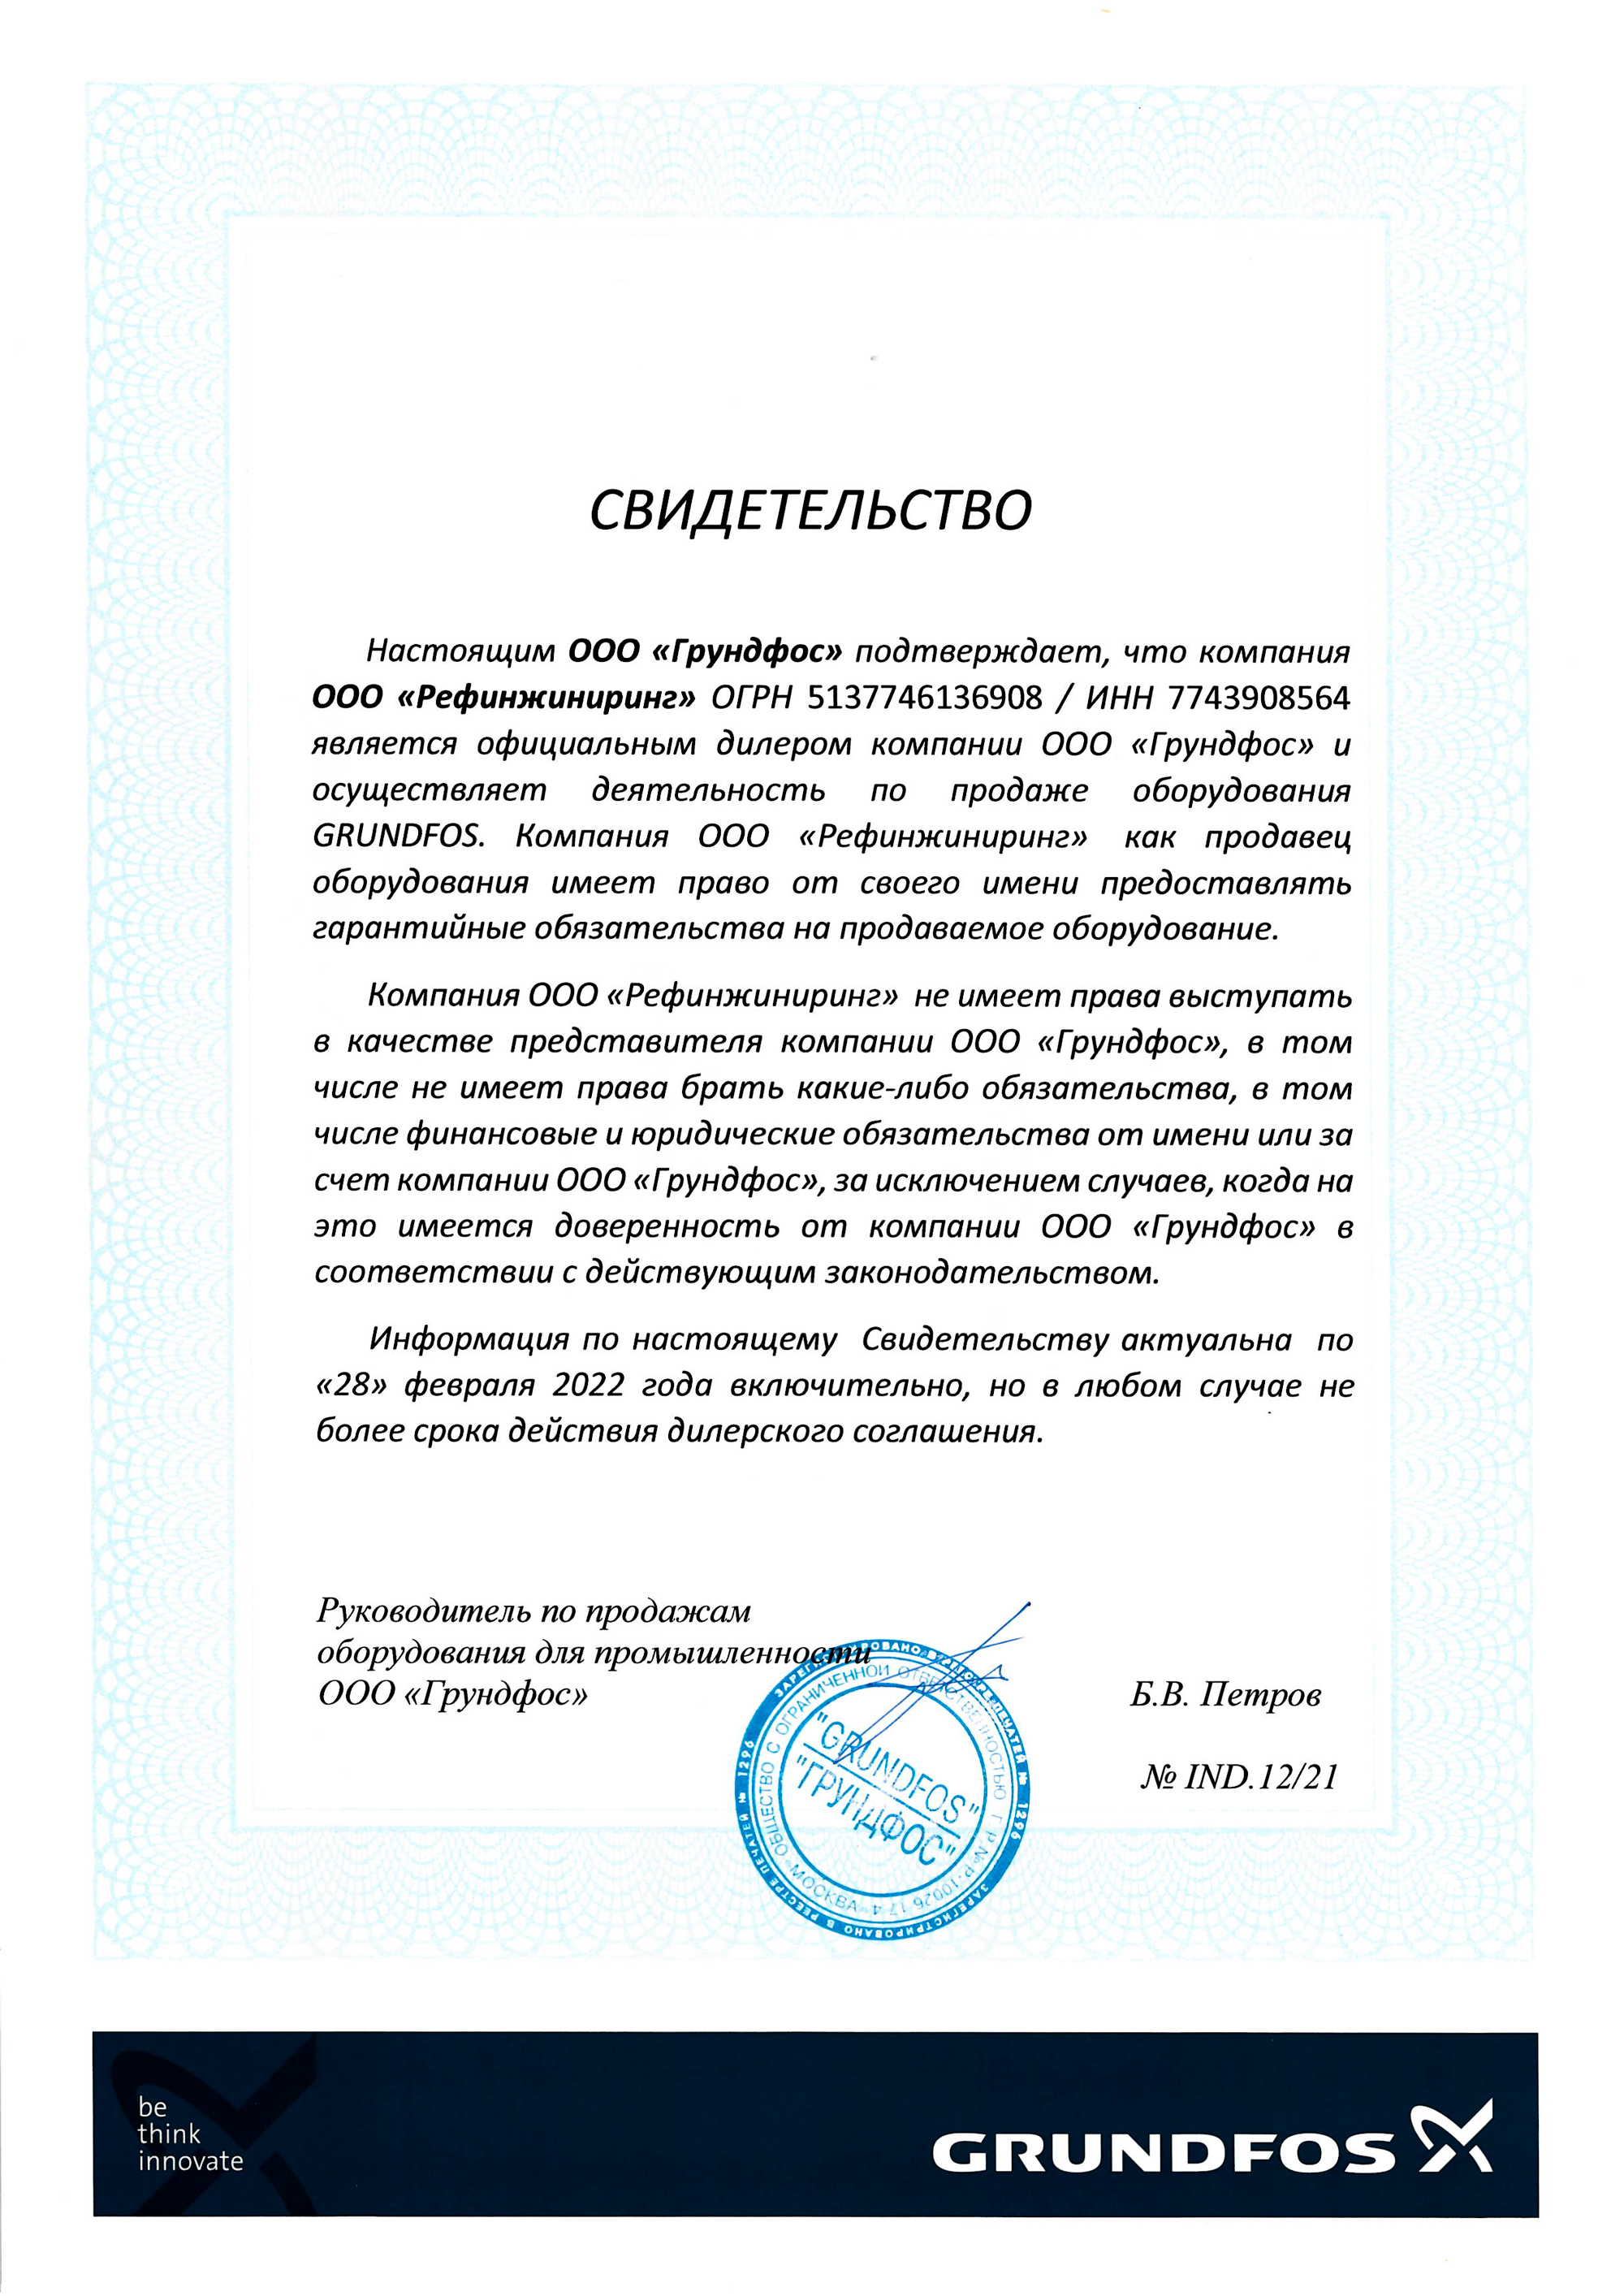 Сертификат о партнерстве компании Рефинжиниринг с Grundfos